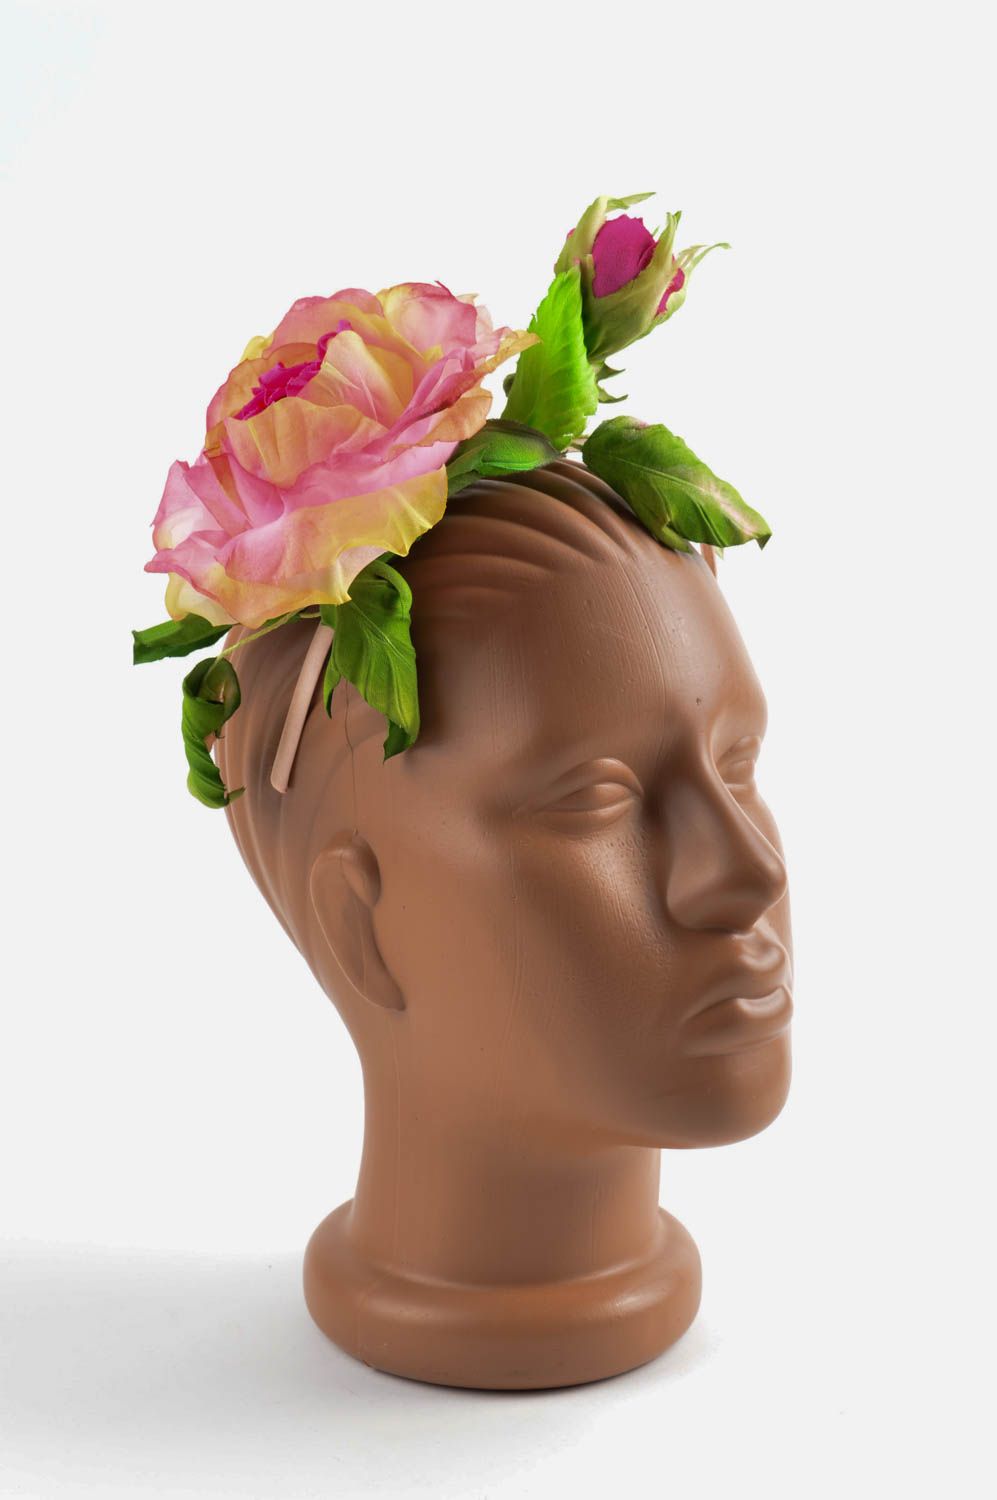 Аксессуар для волос хэнд мэйд обруч на голову обруч с цветком розовым пышным фото 1